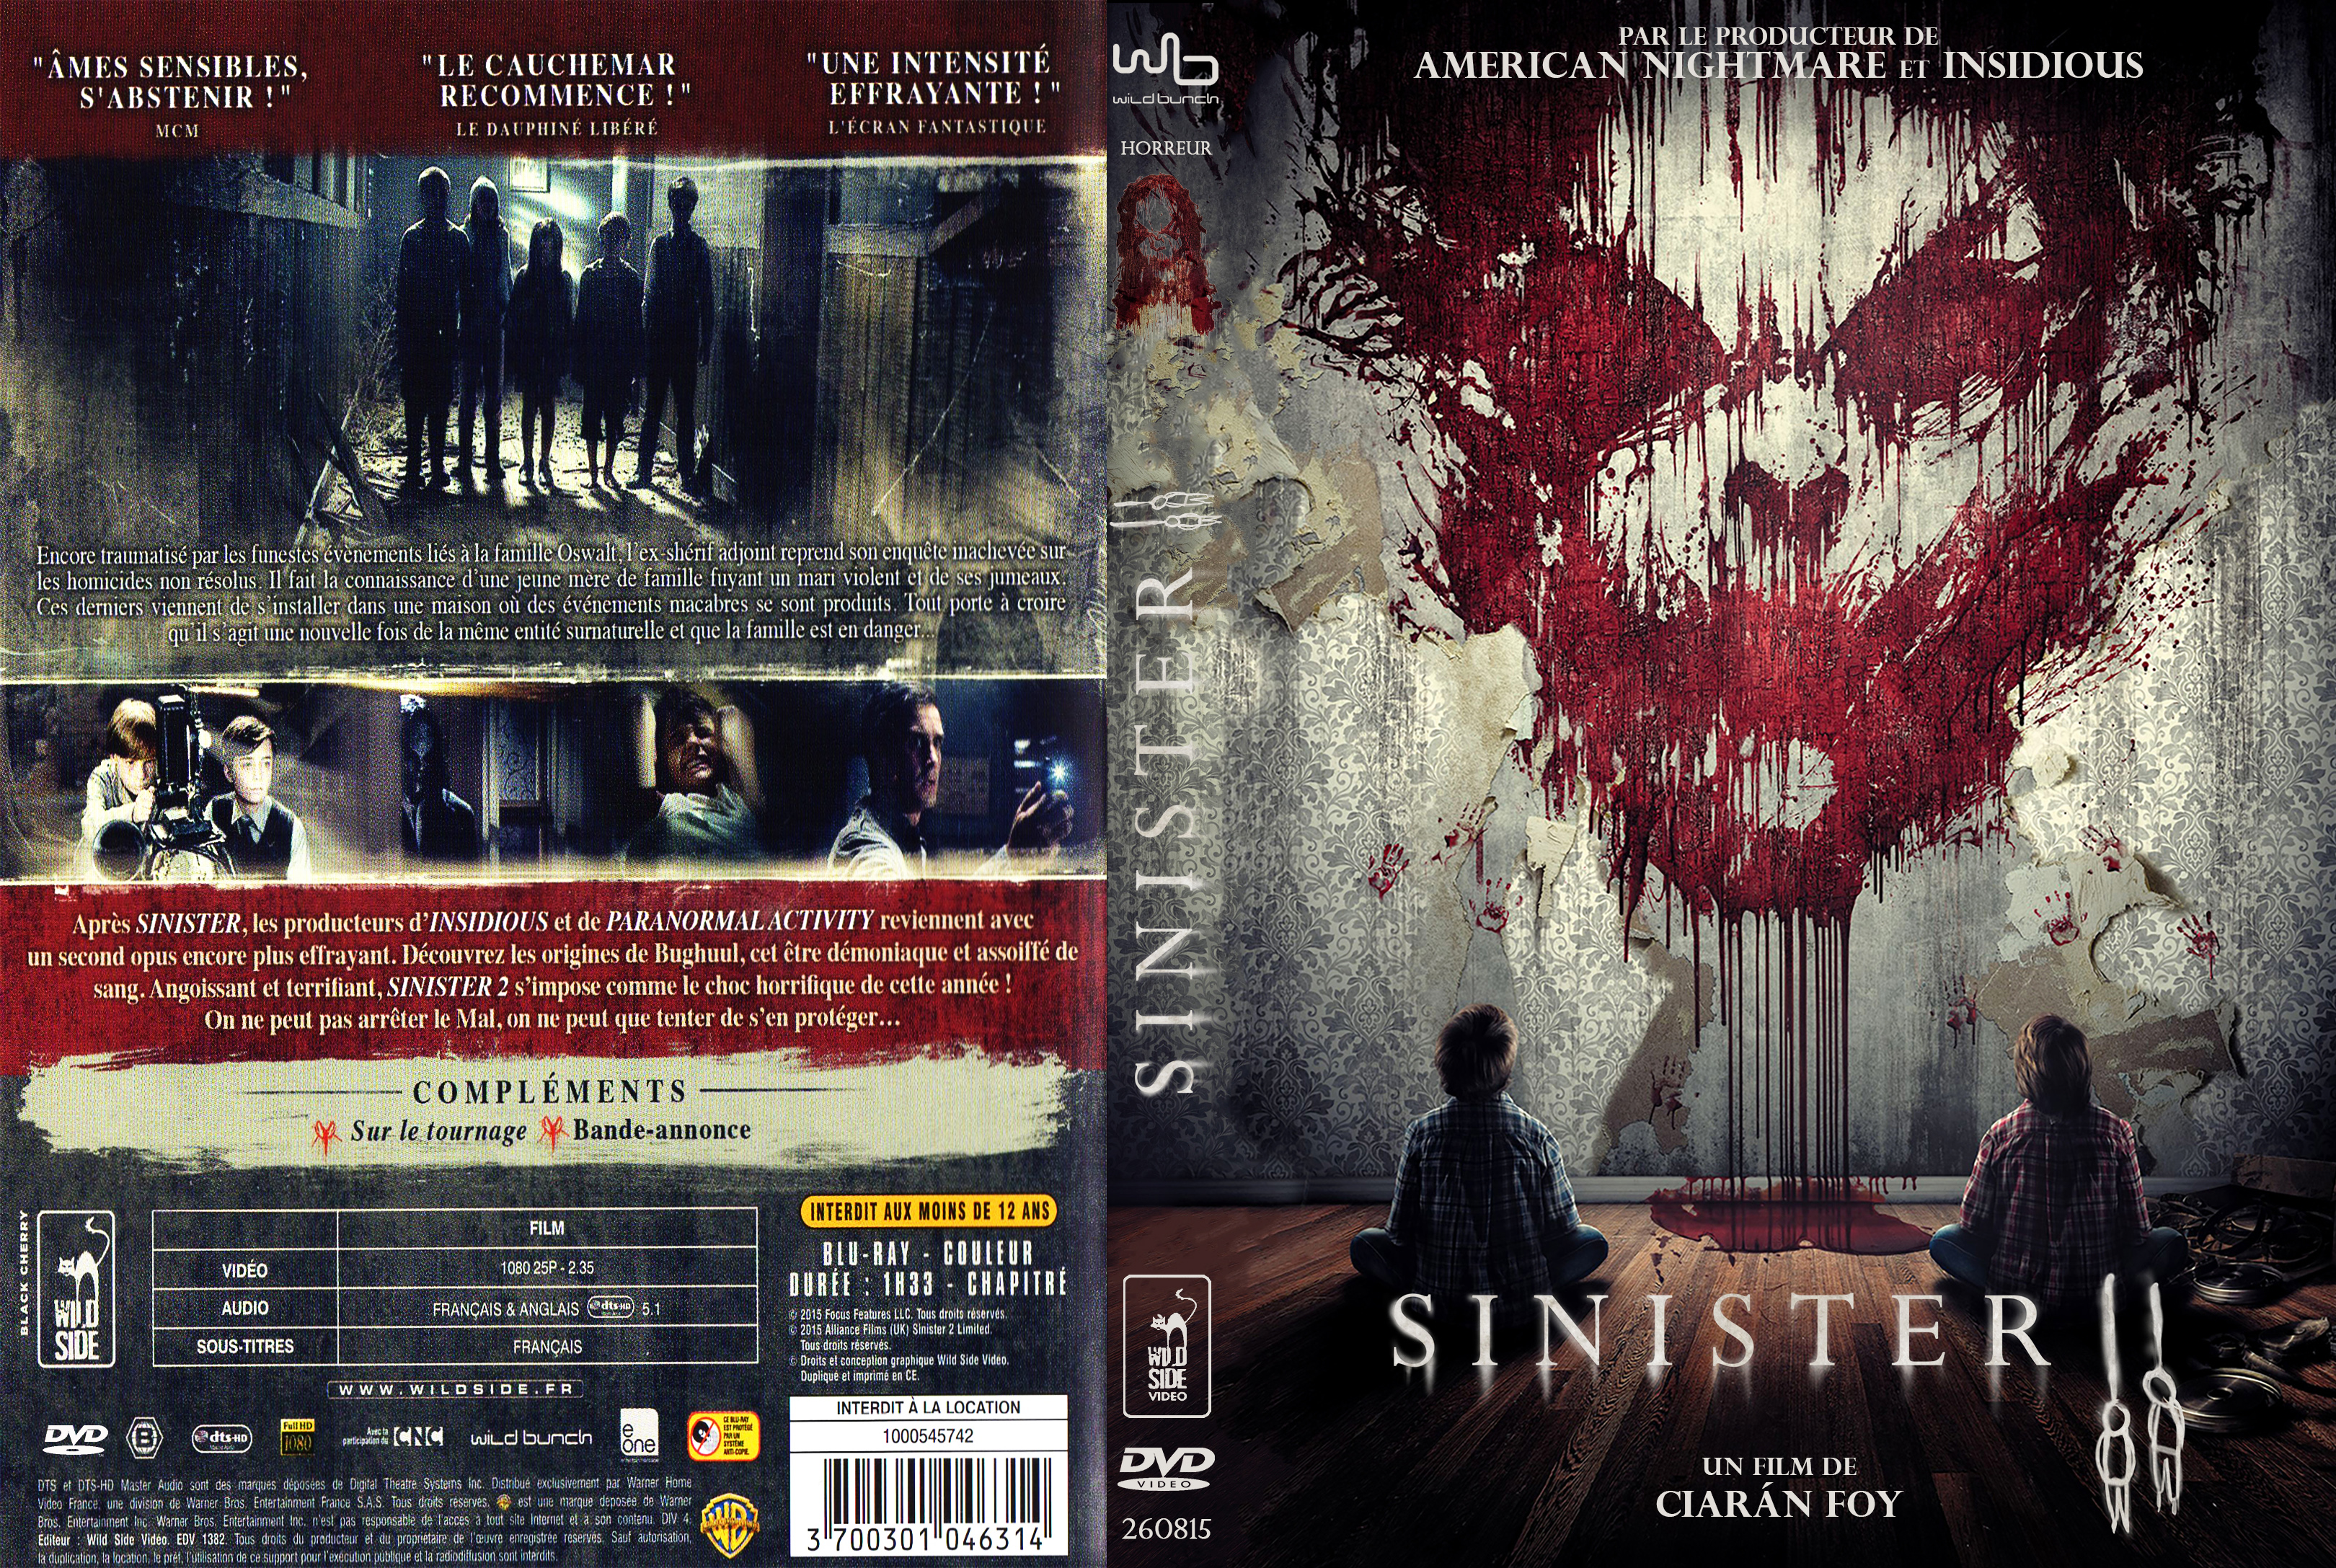 Jaquette DVD Sinister 2 custom v2